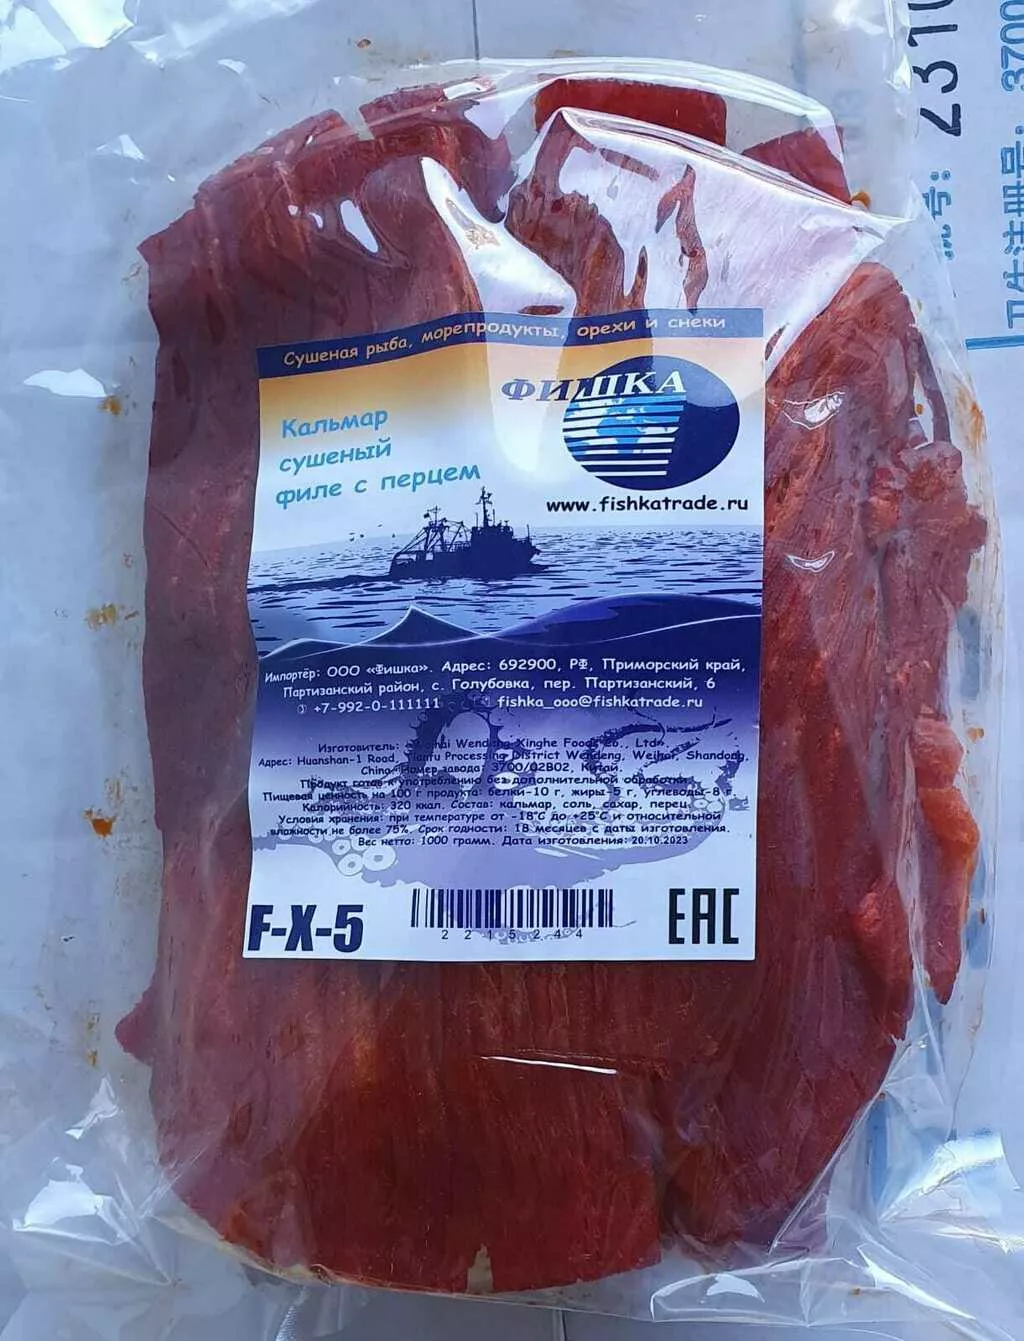 сушеная рыба и морепродукты оптом в Артем 2